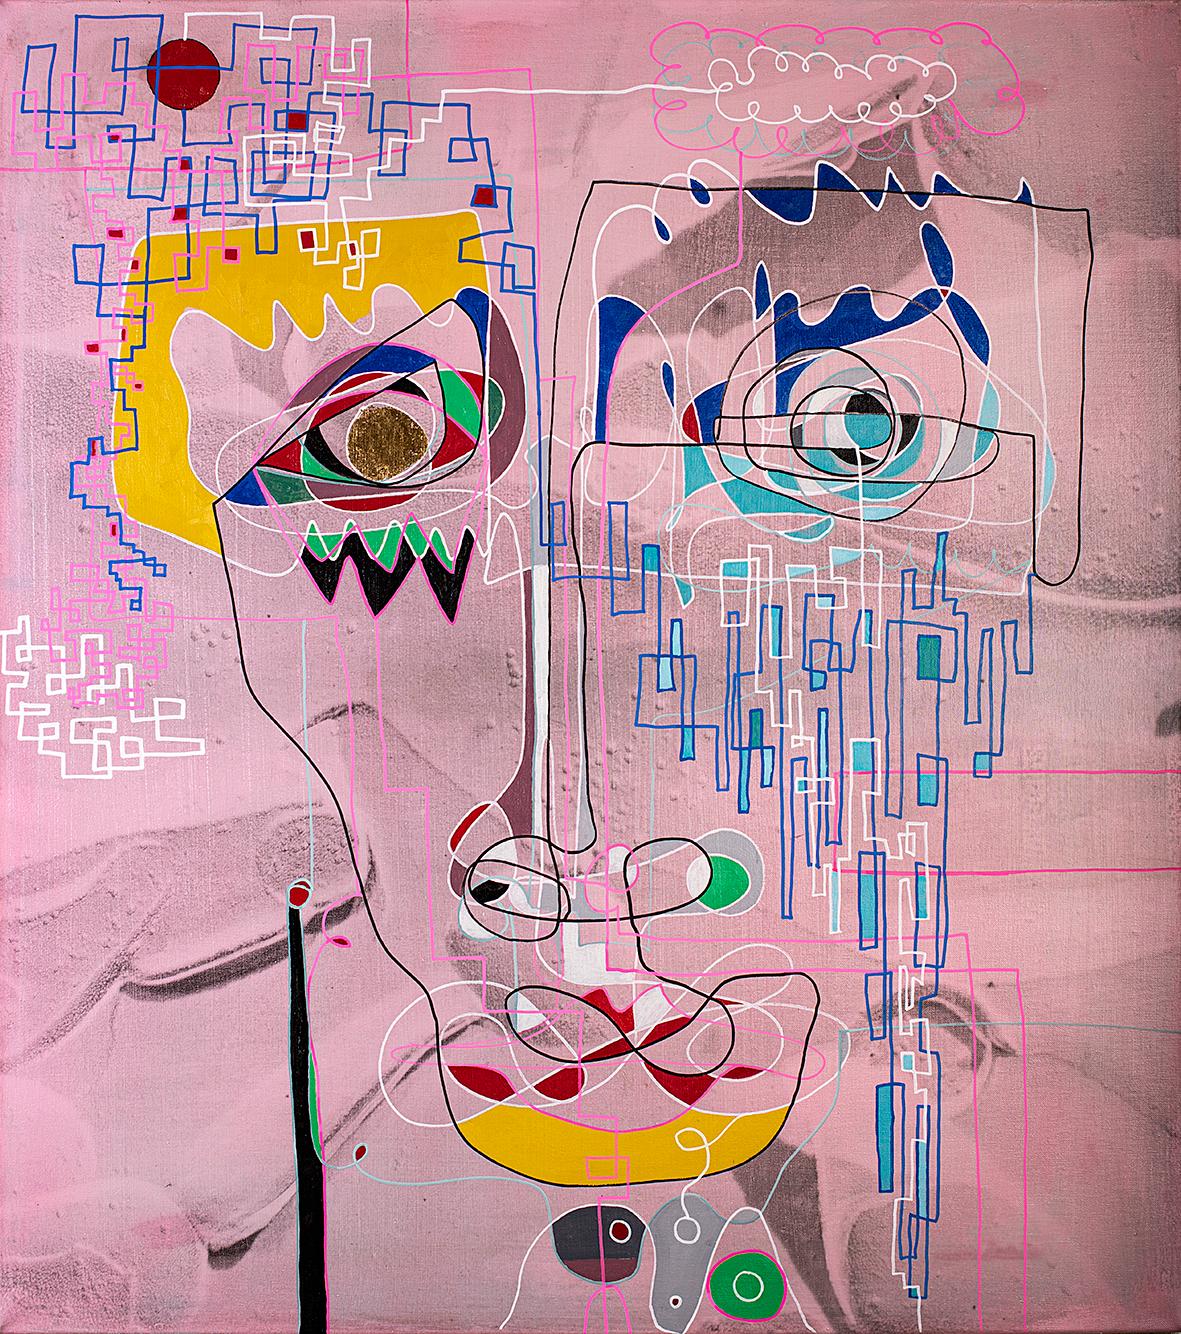 Felipe Fredes Abstract Painting – Instruktionen, wie man in drei Augenblicken verschwinden kann (Rosa), Neurowissenschaften triptychon